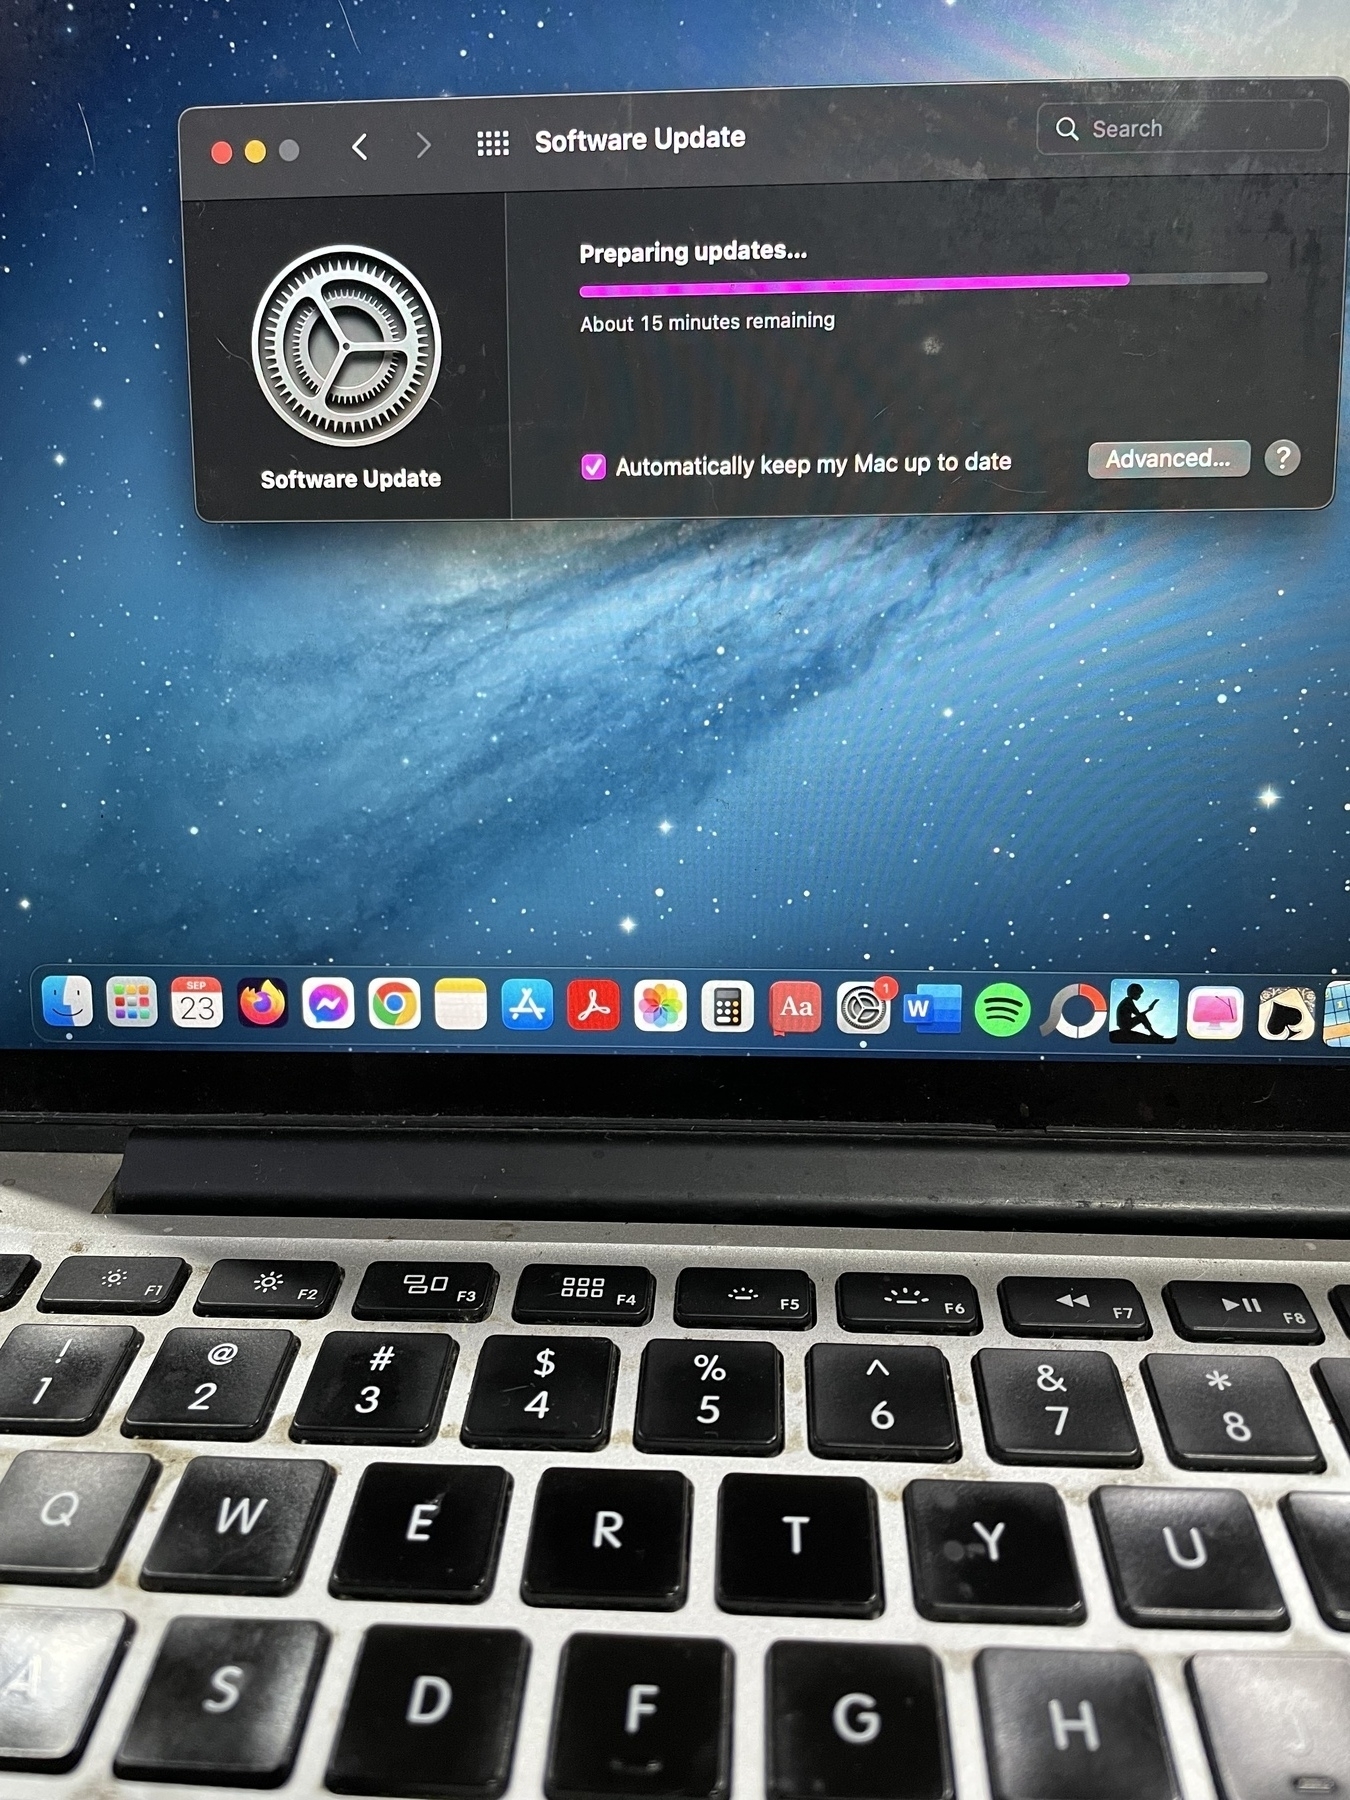 My Mac gets an update